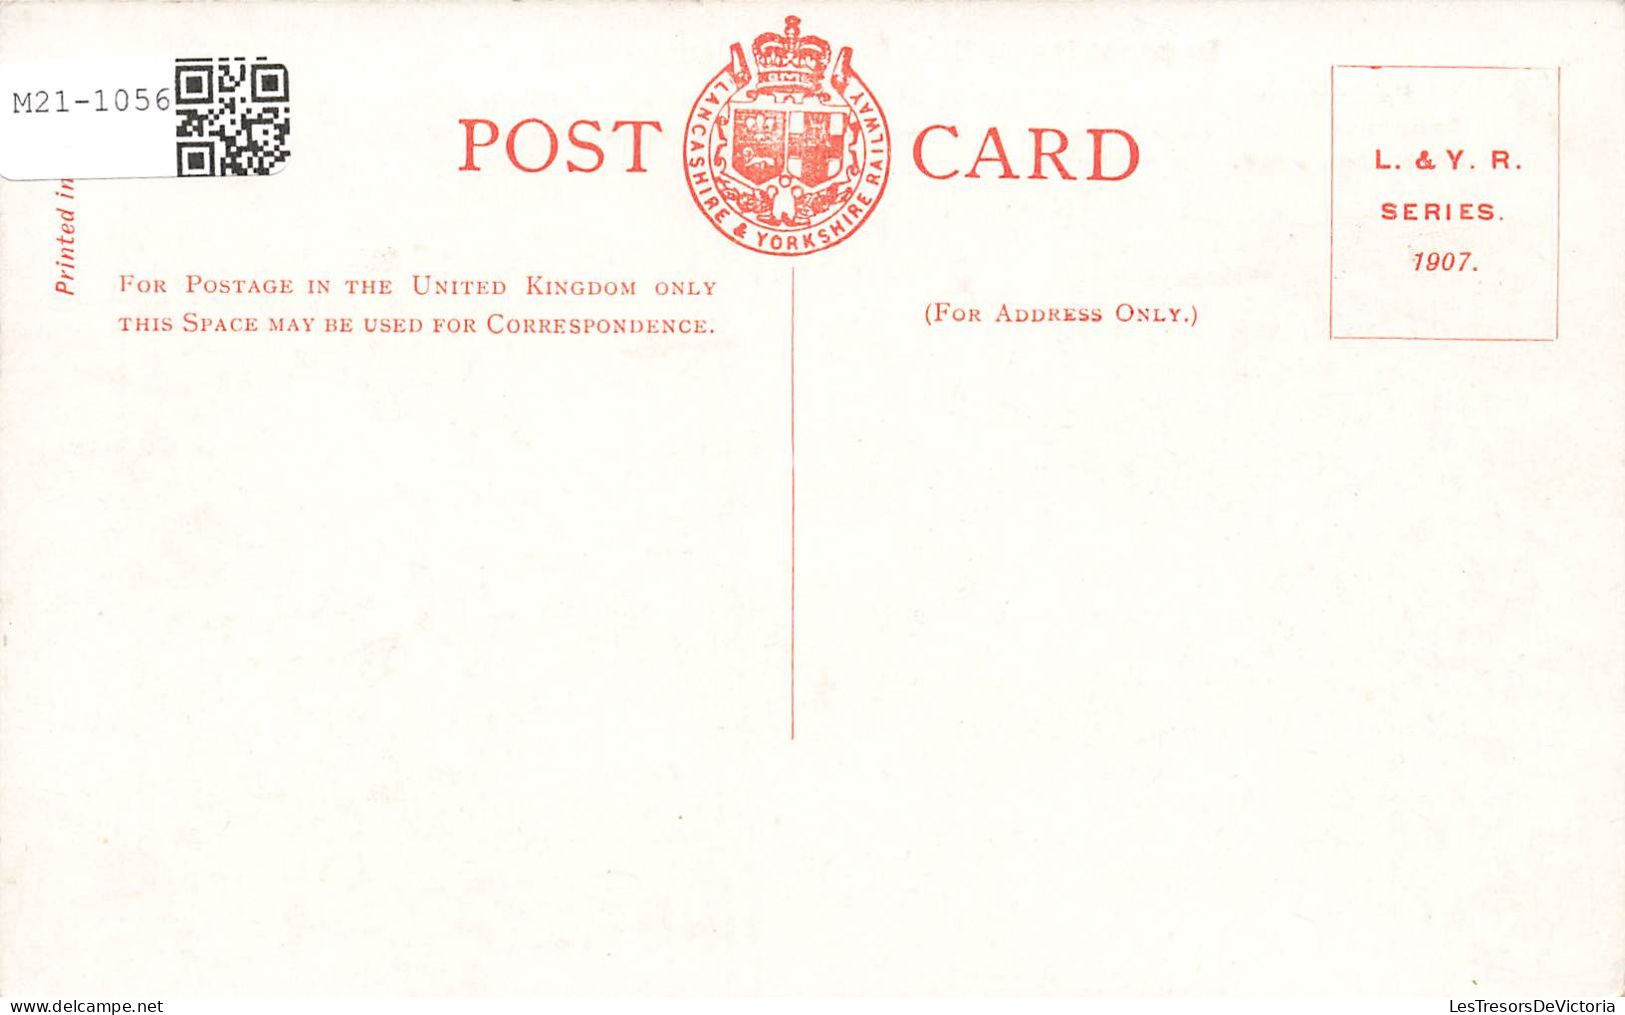 ROYAUME-UNI - Angleterre - Lancashire Et Yorkshire Railway D'Angleterre - Colorisé - Carte Postale Ancienne - Autres & Non Classés